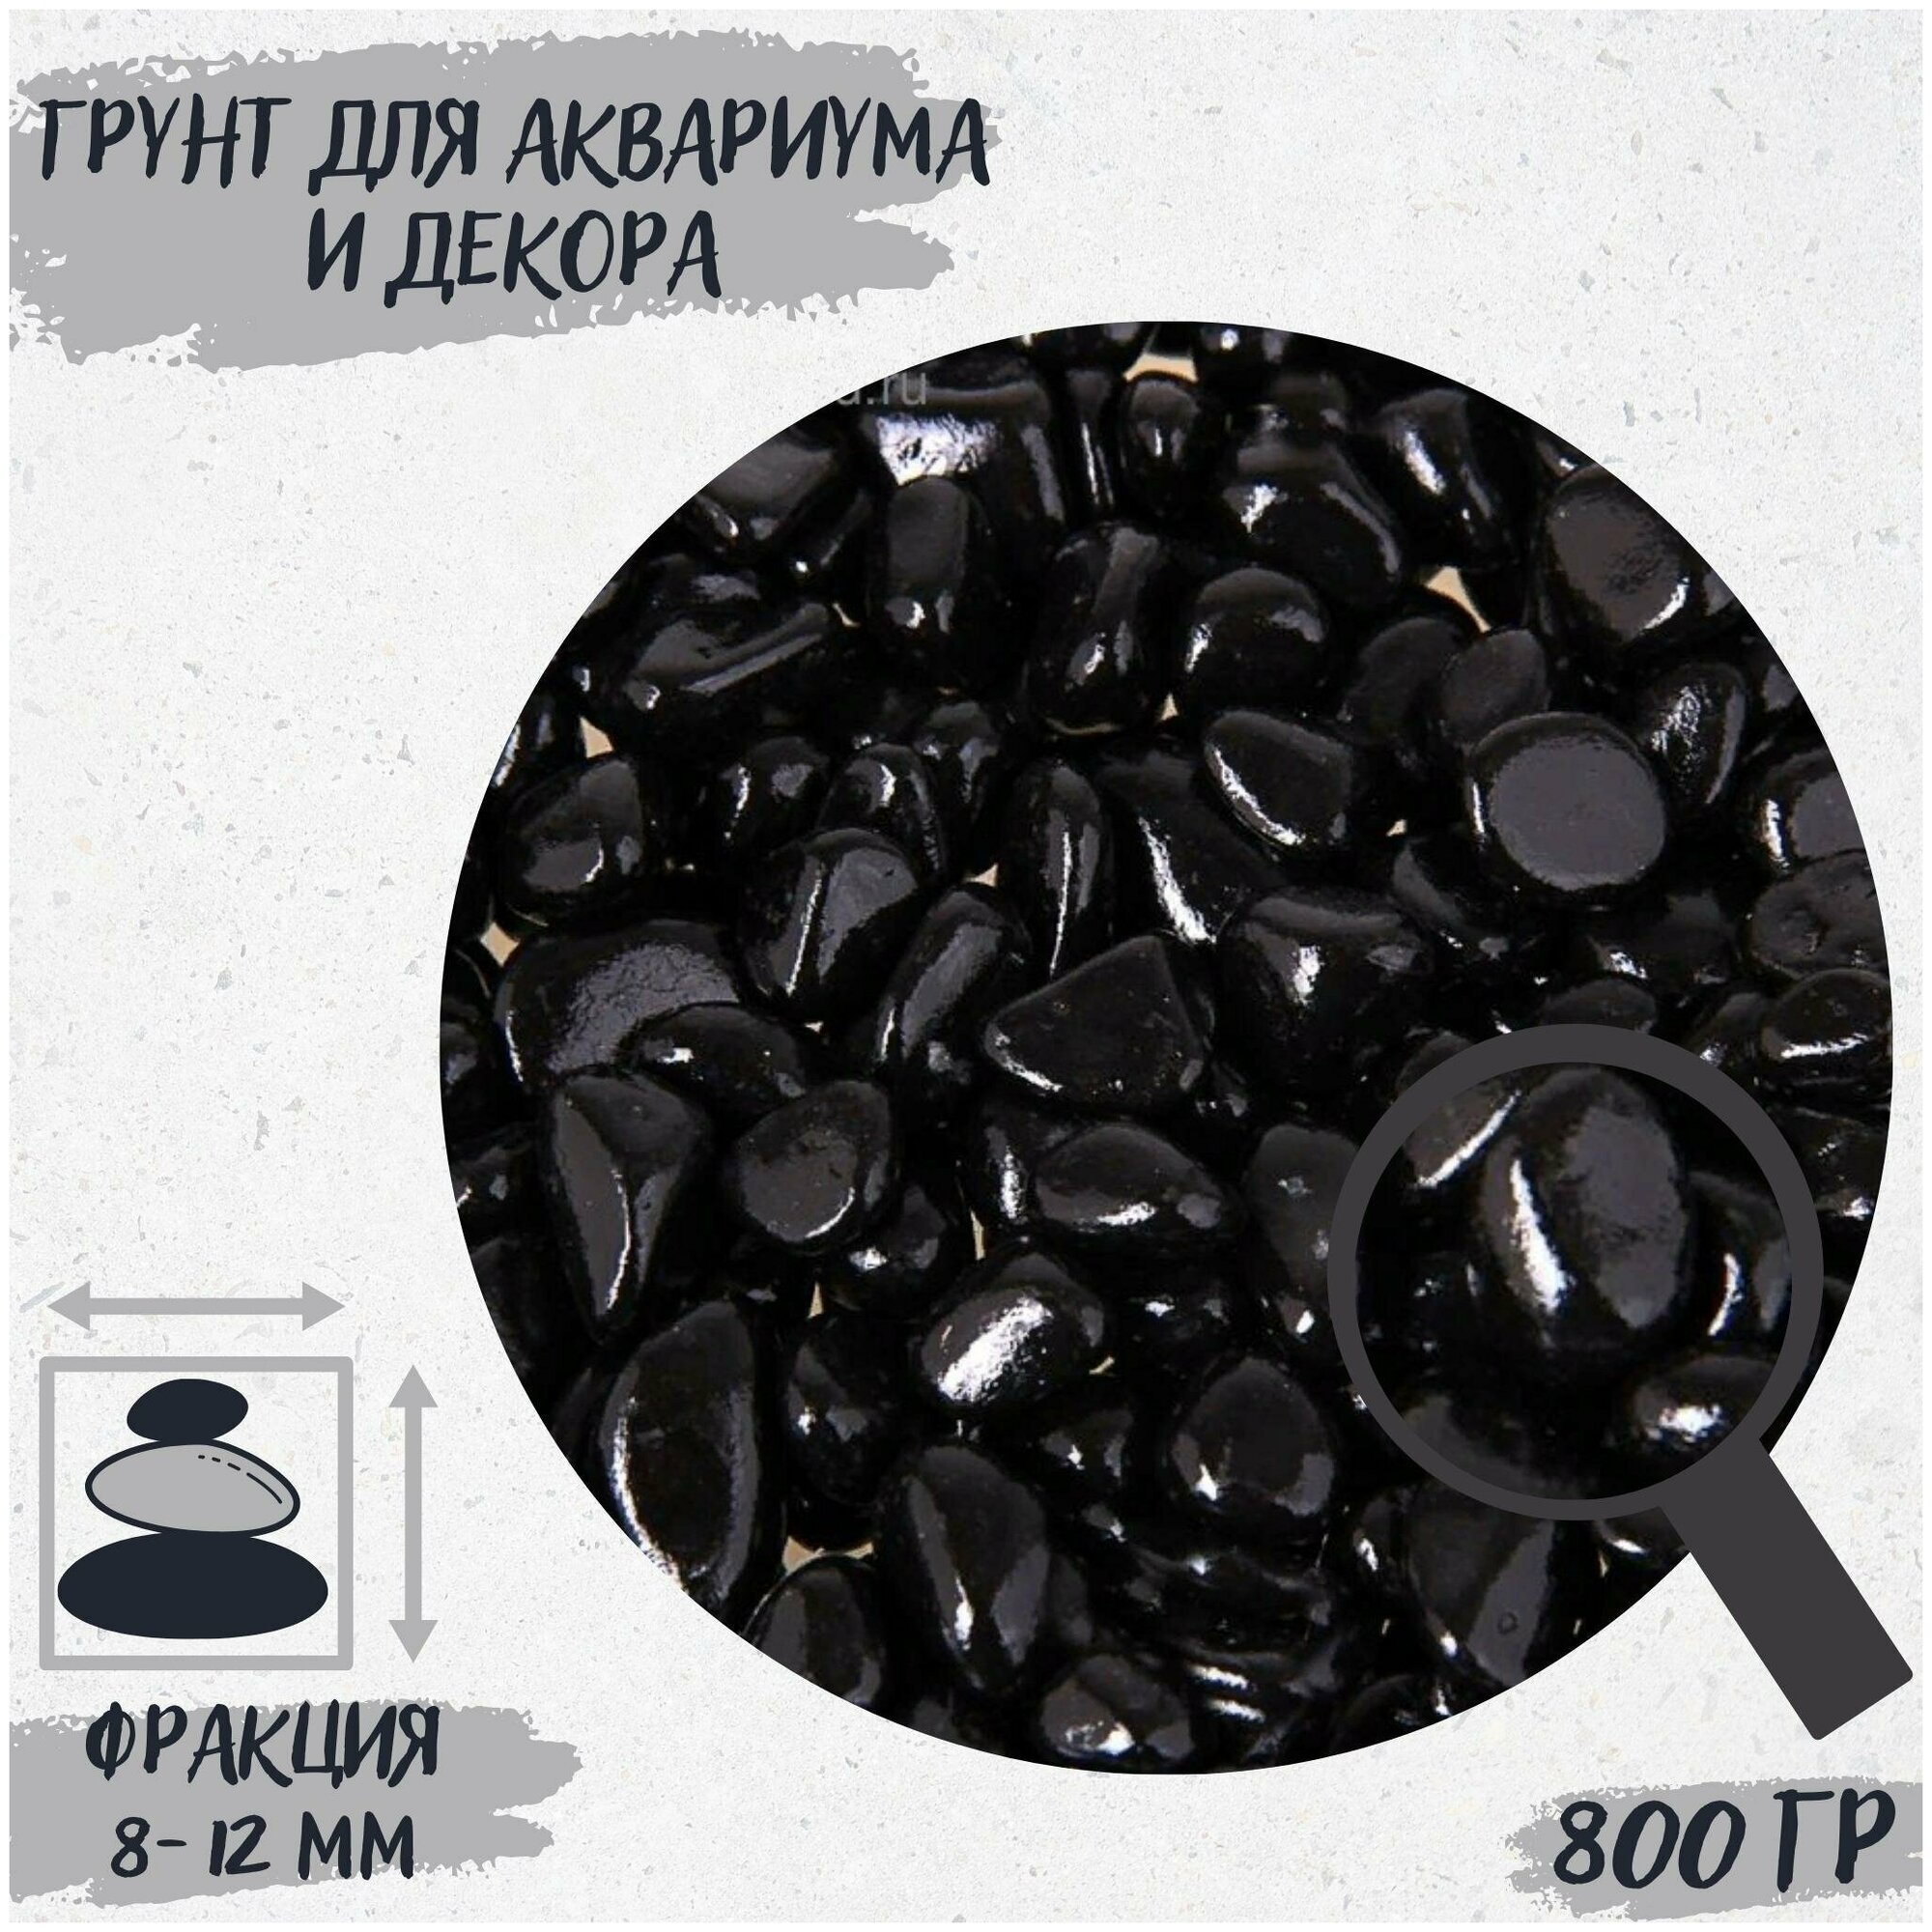 Грунт для аквариума и декора "Галька цветная, черная", 800г, фракция 8-12 мм